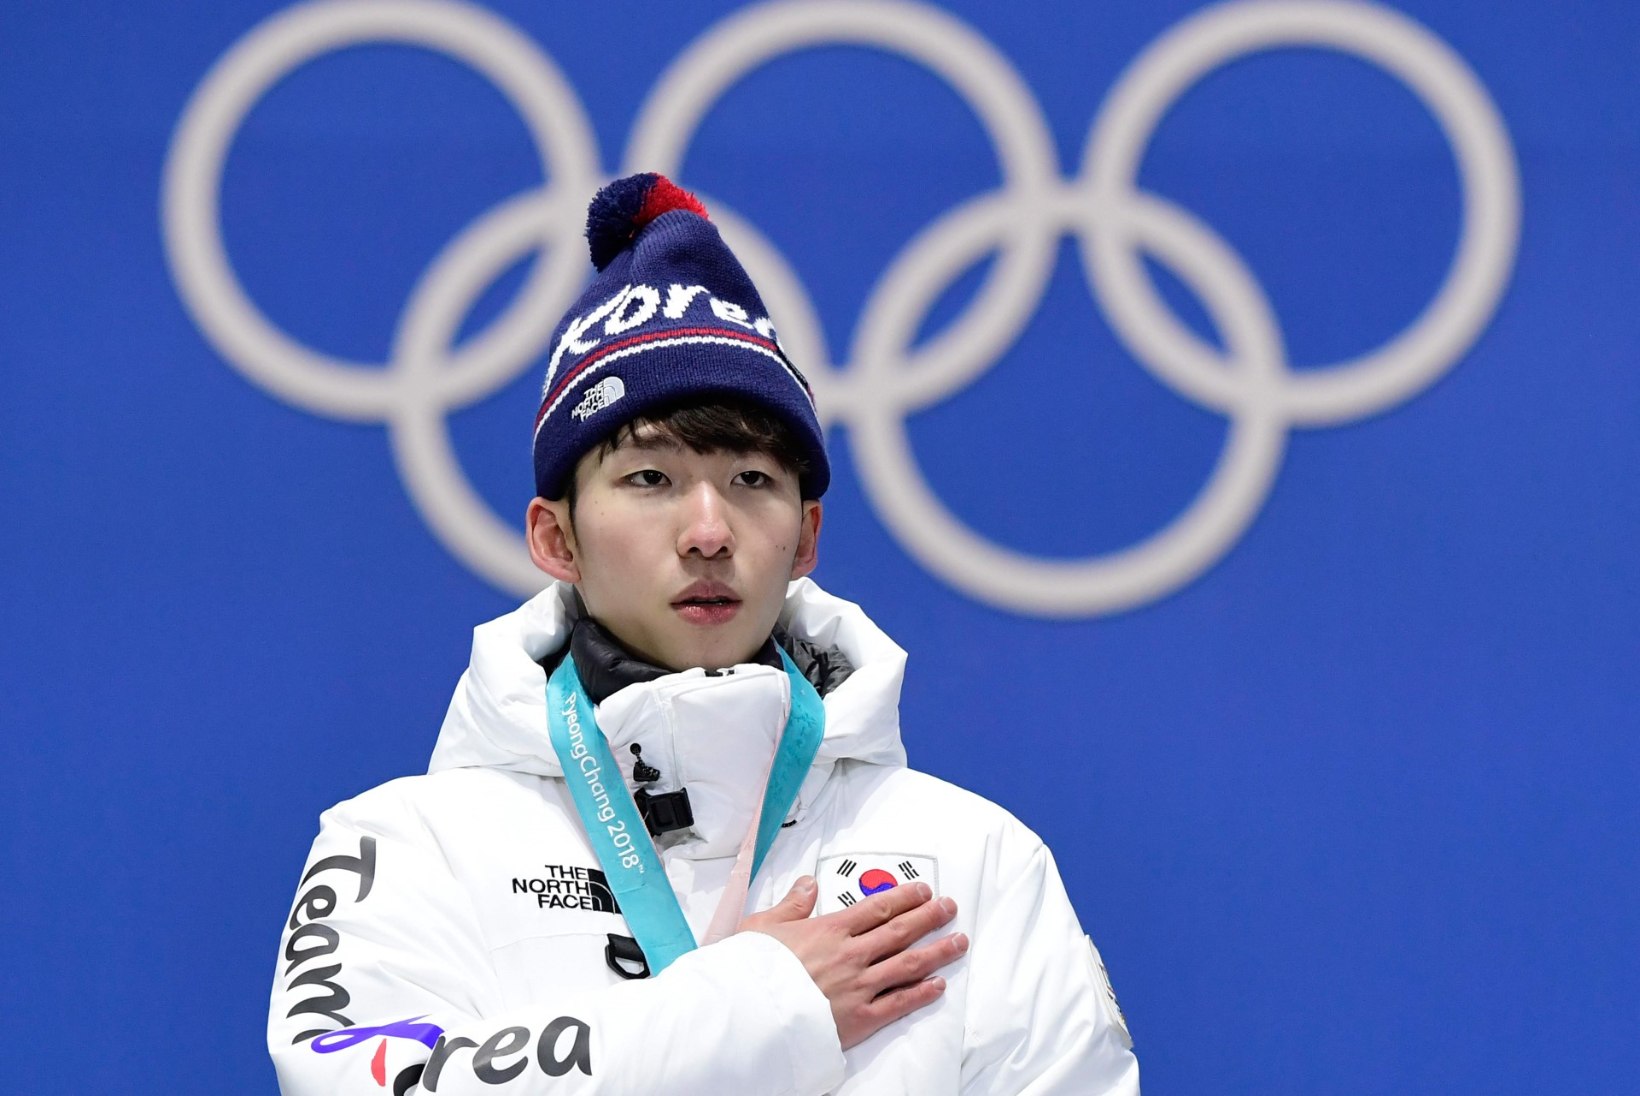 Kohus mõistis võõra peenise paljastanud Pyeongchangi olümpiavõitja süüdi seksuaalses ahistamises